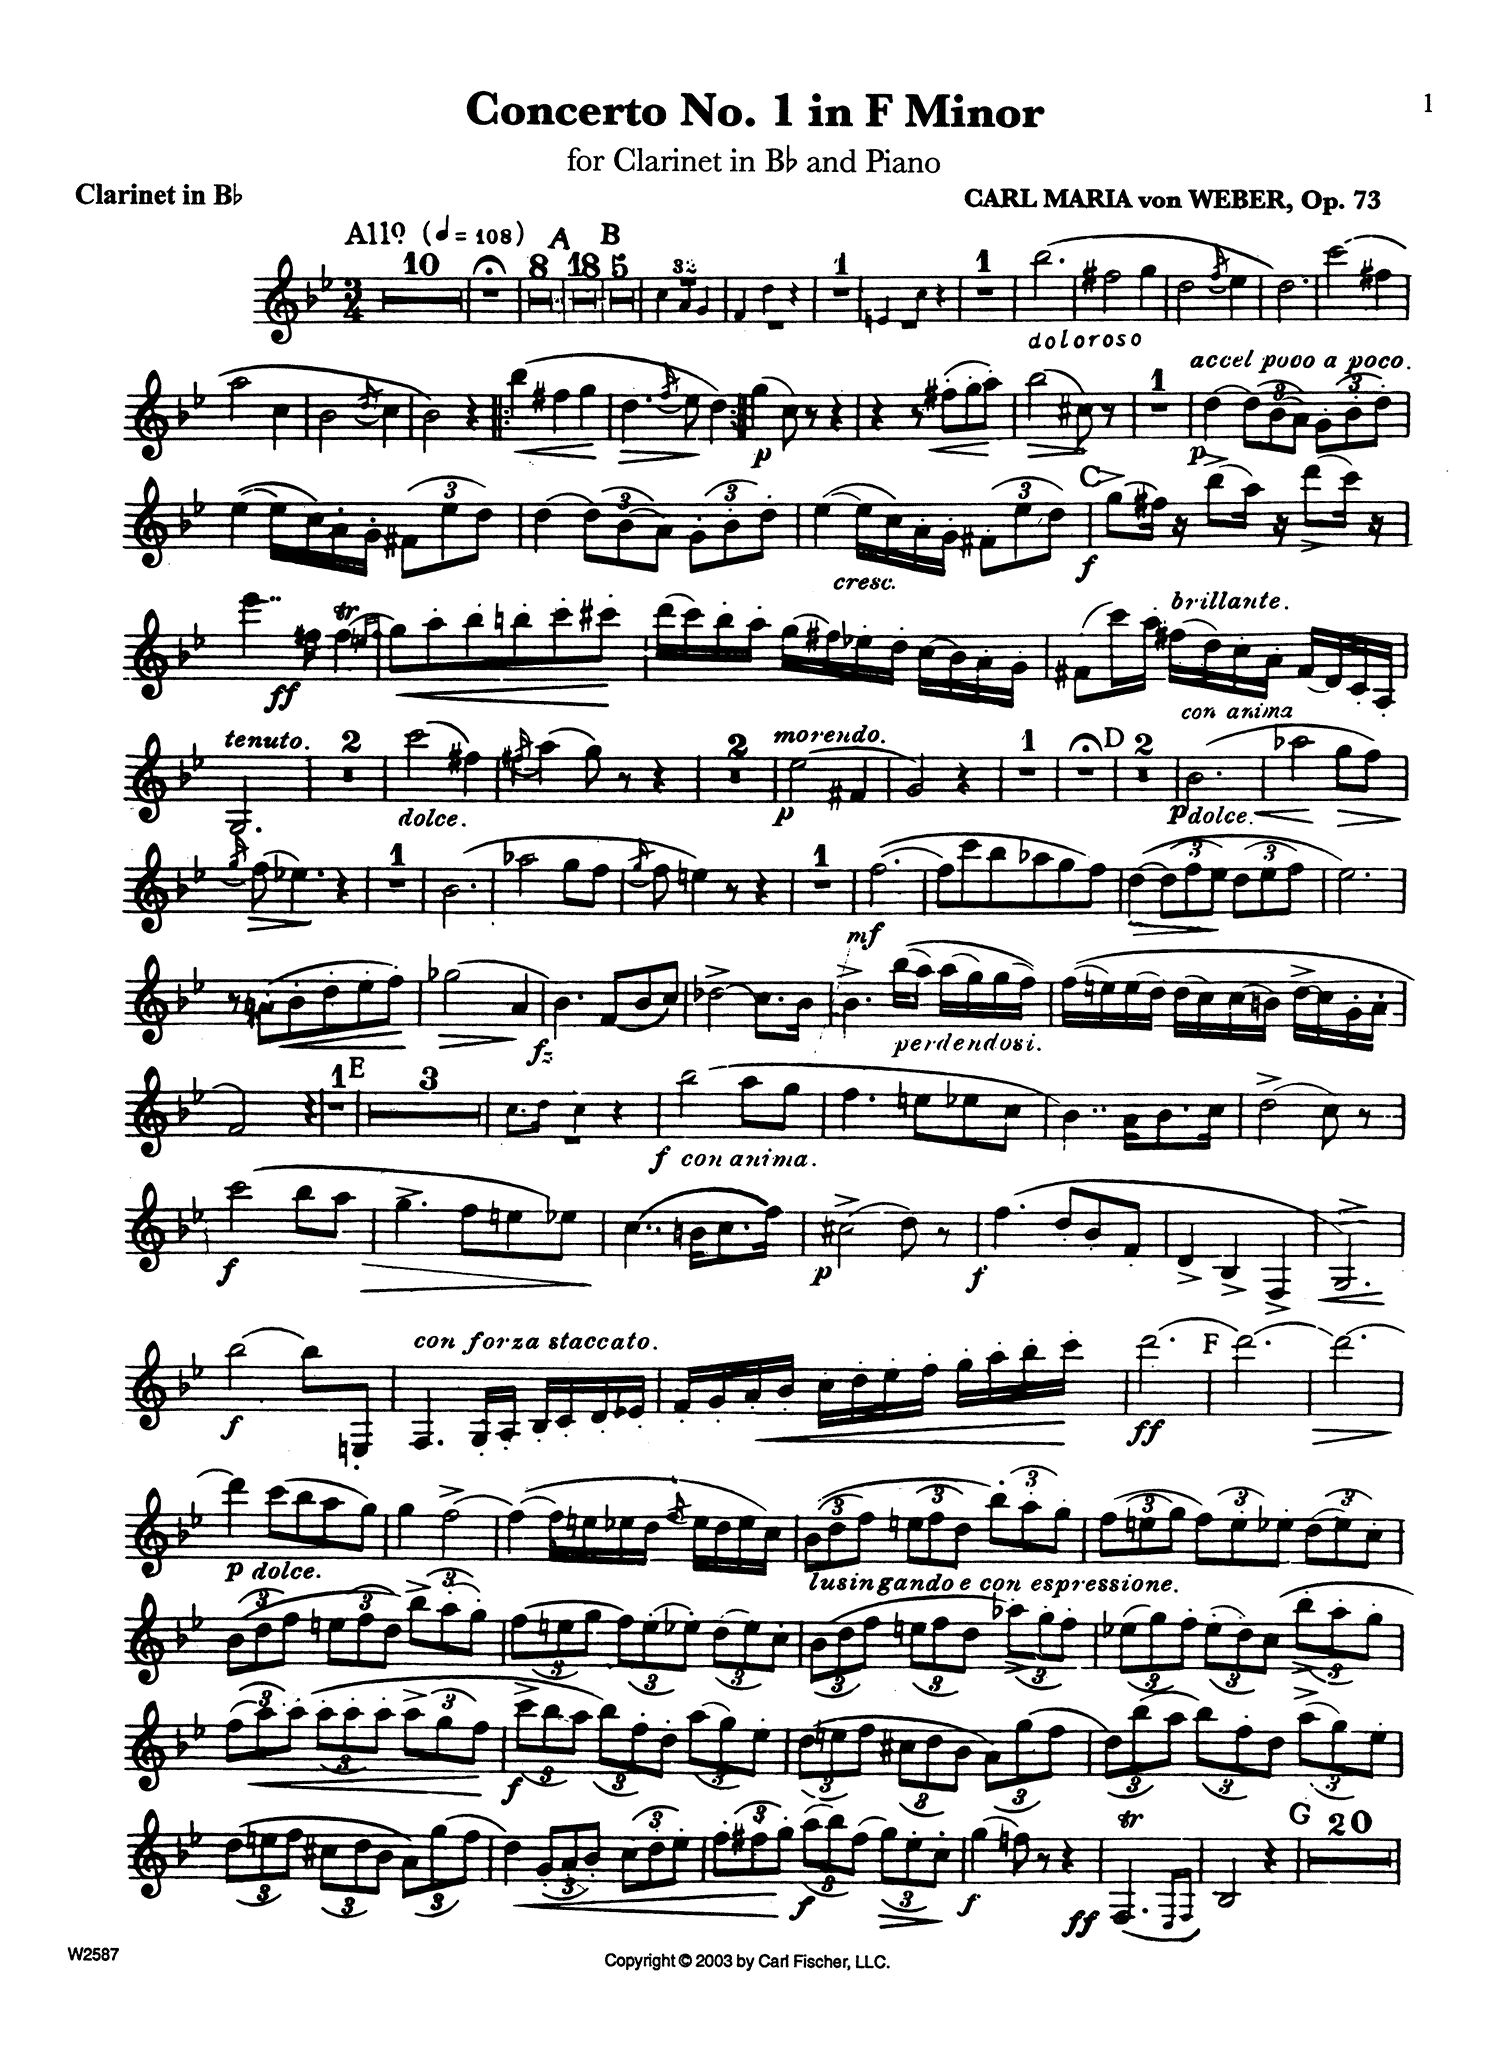 Clarinet Concerto No. 1, Op. 73 Clarinet part